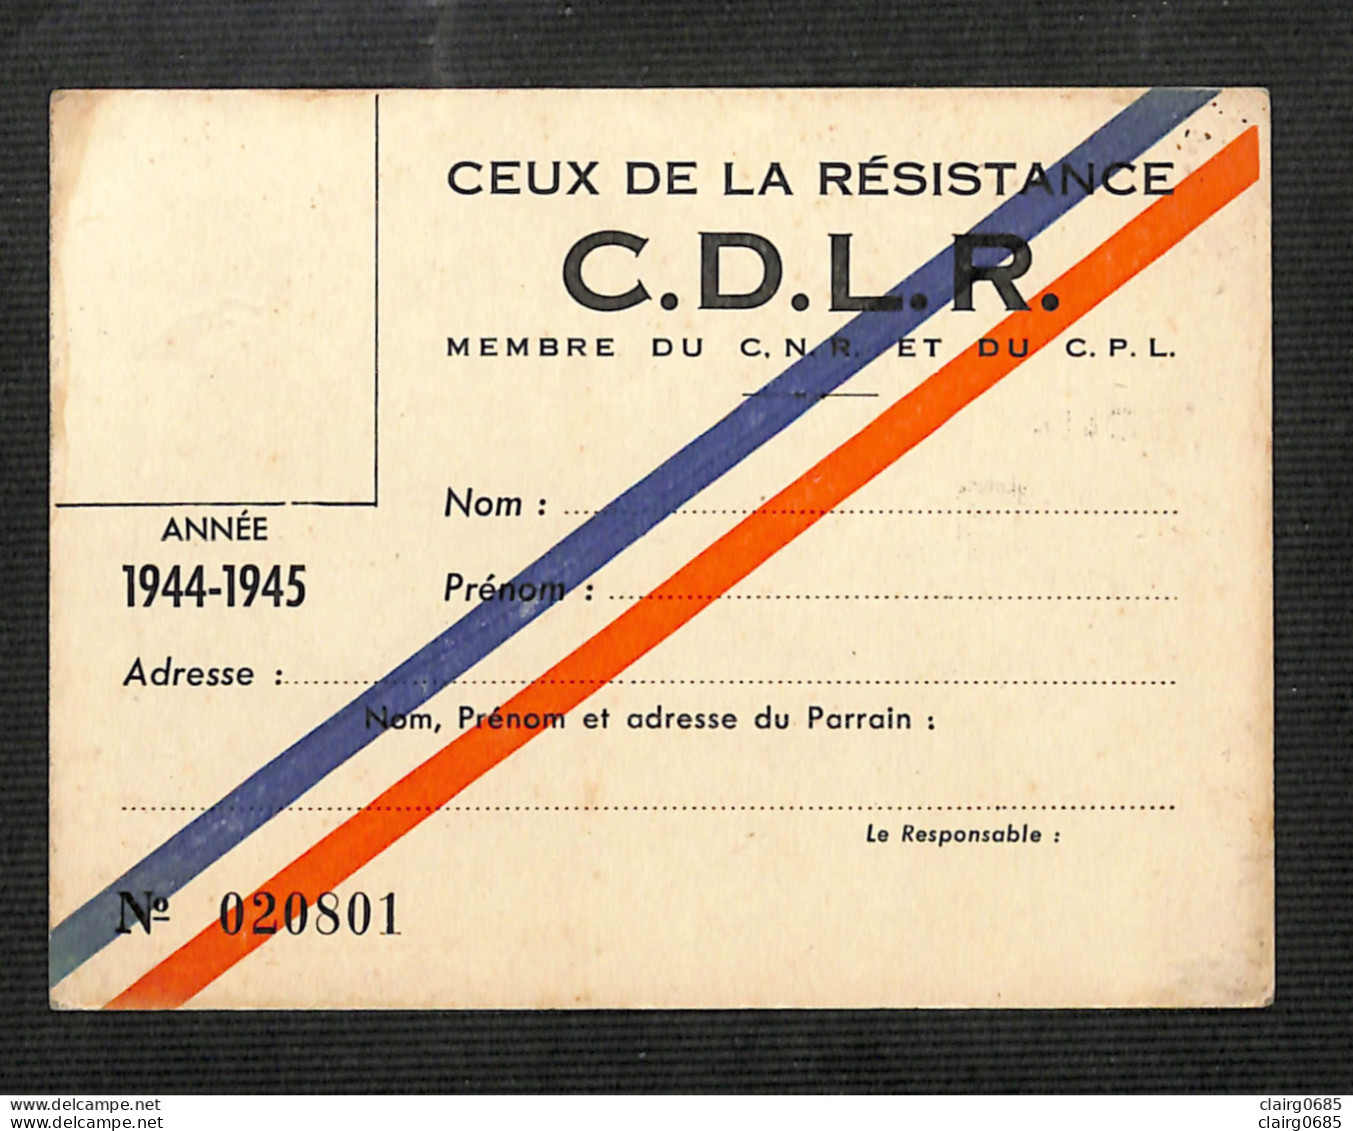 MILITARIA - CEUX DE LA RESISTANCE - C.D.L.R. - Carte De Membre Vierge  Du C. N. R. Et Du C. P. L. - 1944-1945 - Documenti